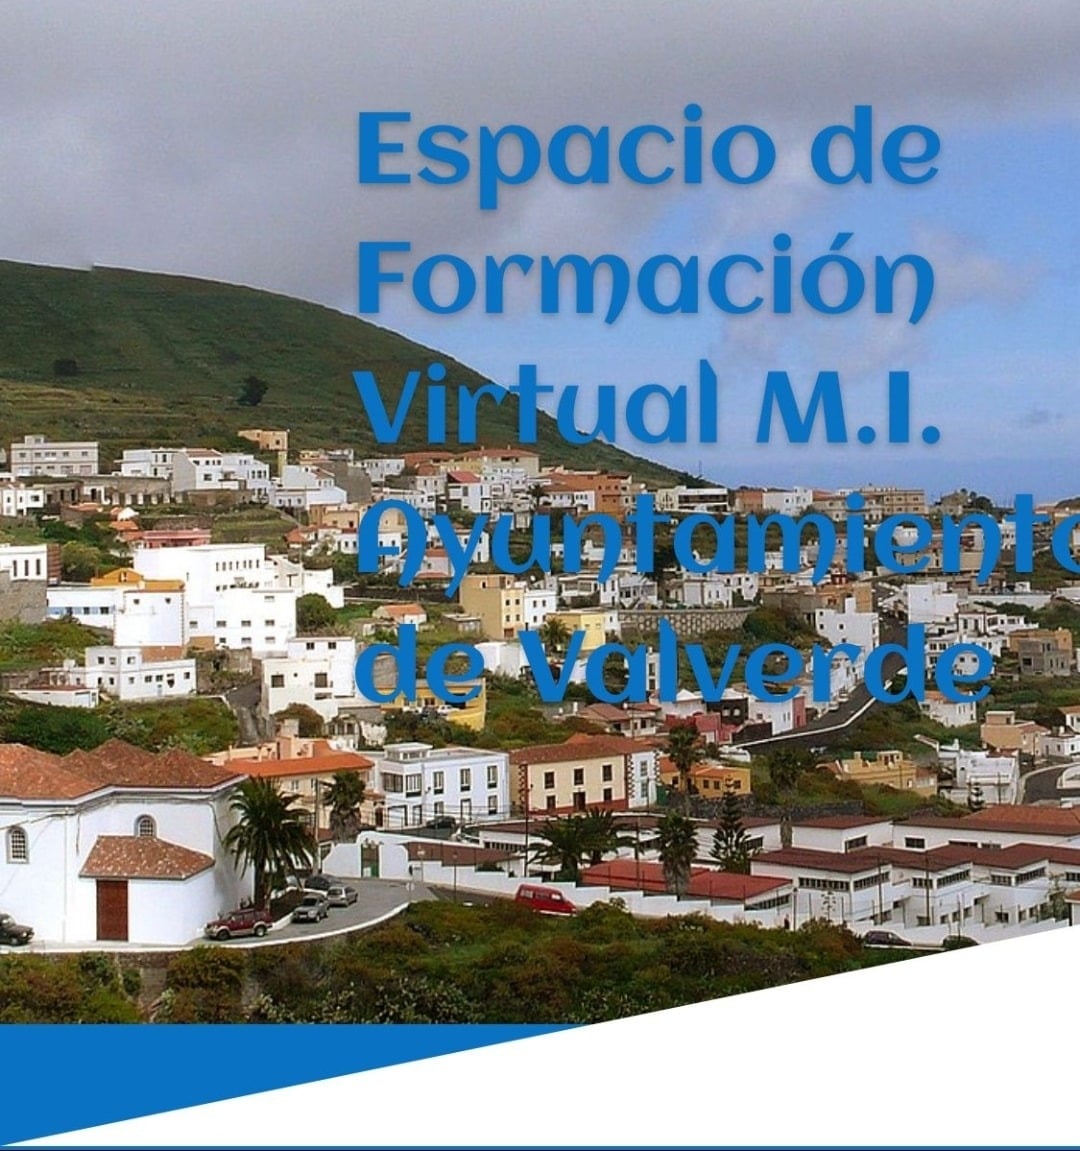 En este momento estás viendo Espacio de formación virtual del ayuntamiento de Valverde